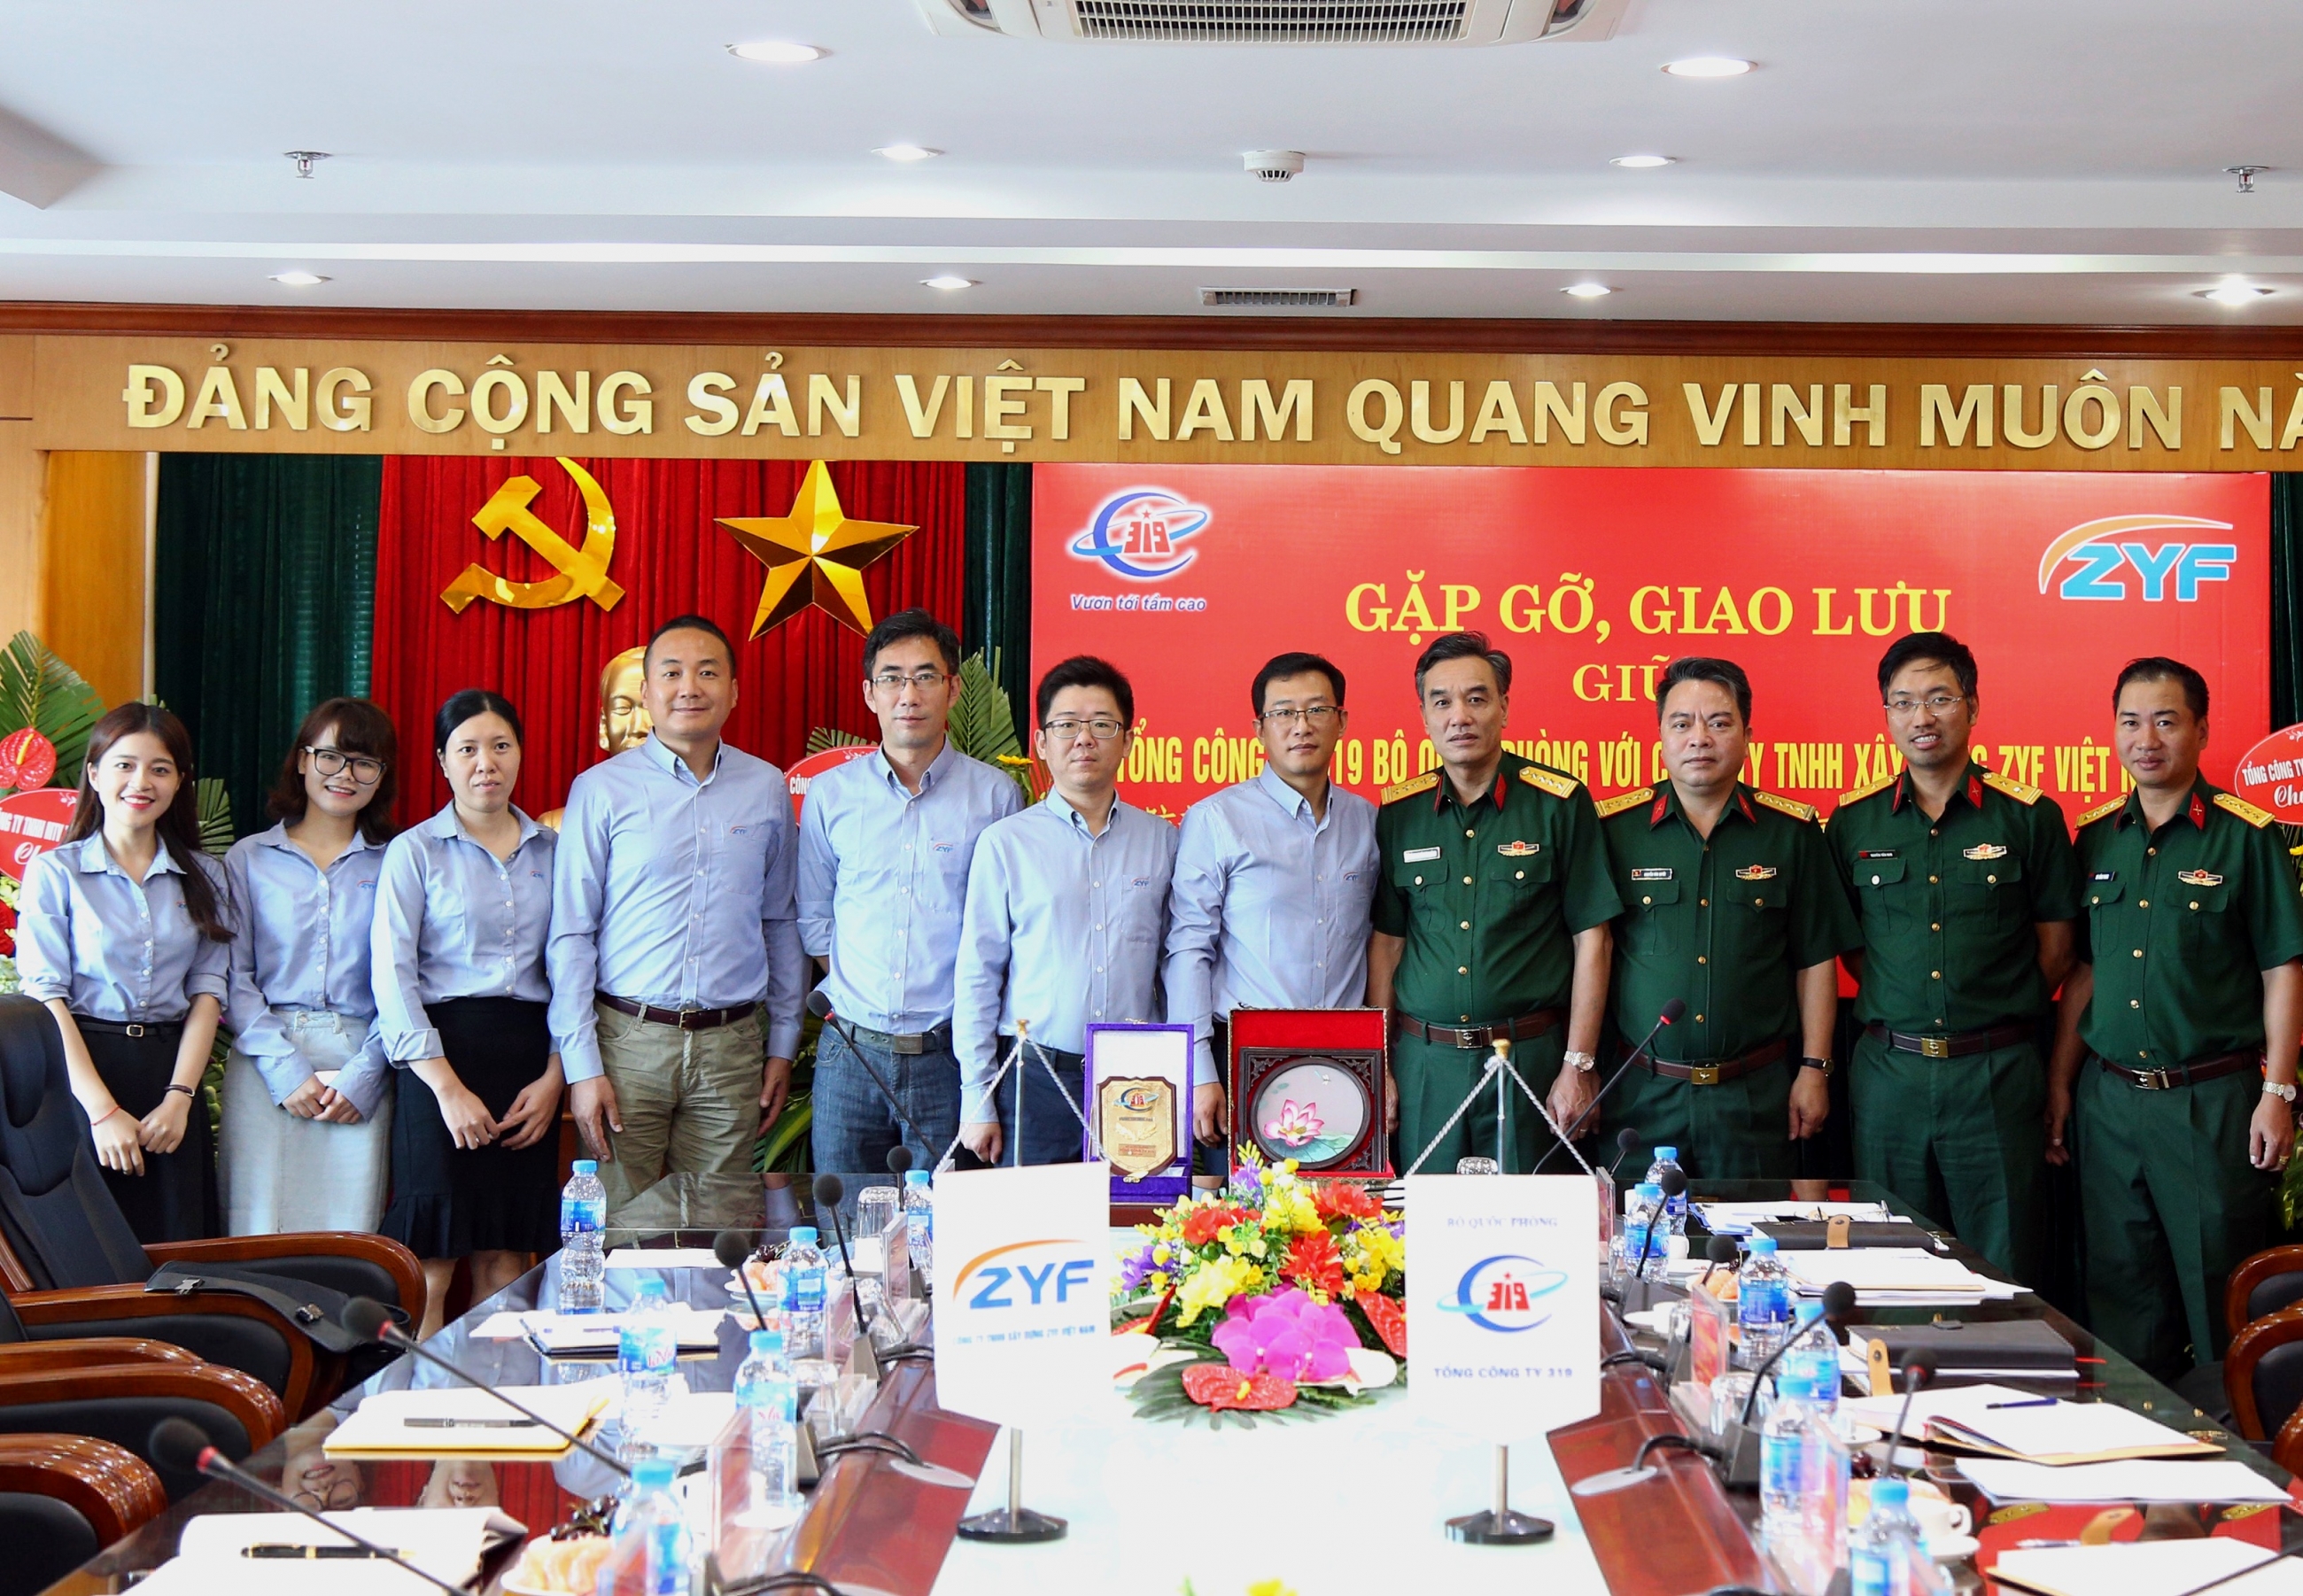 ZYFVNWeekly| Một tuần của ZYF Việt Nam